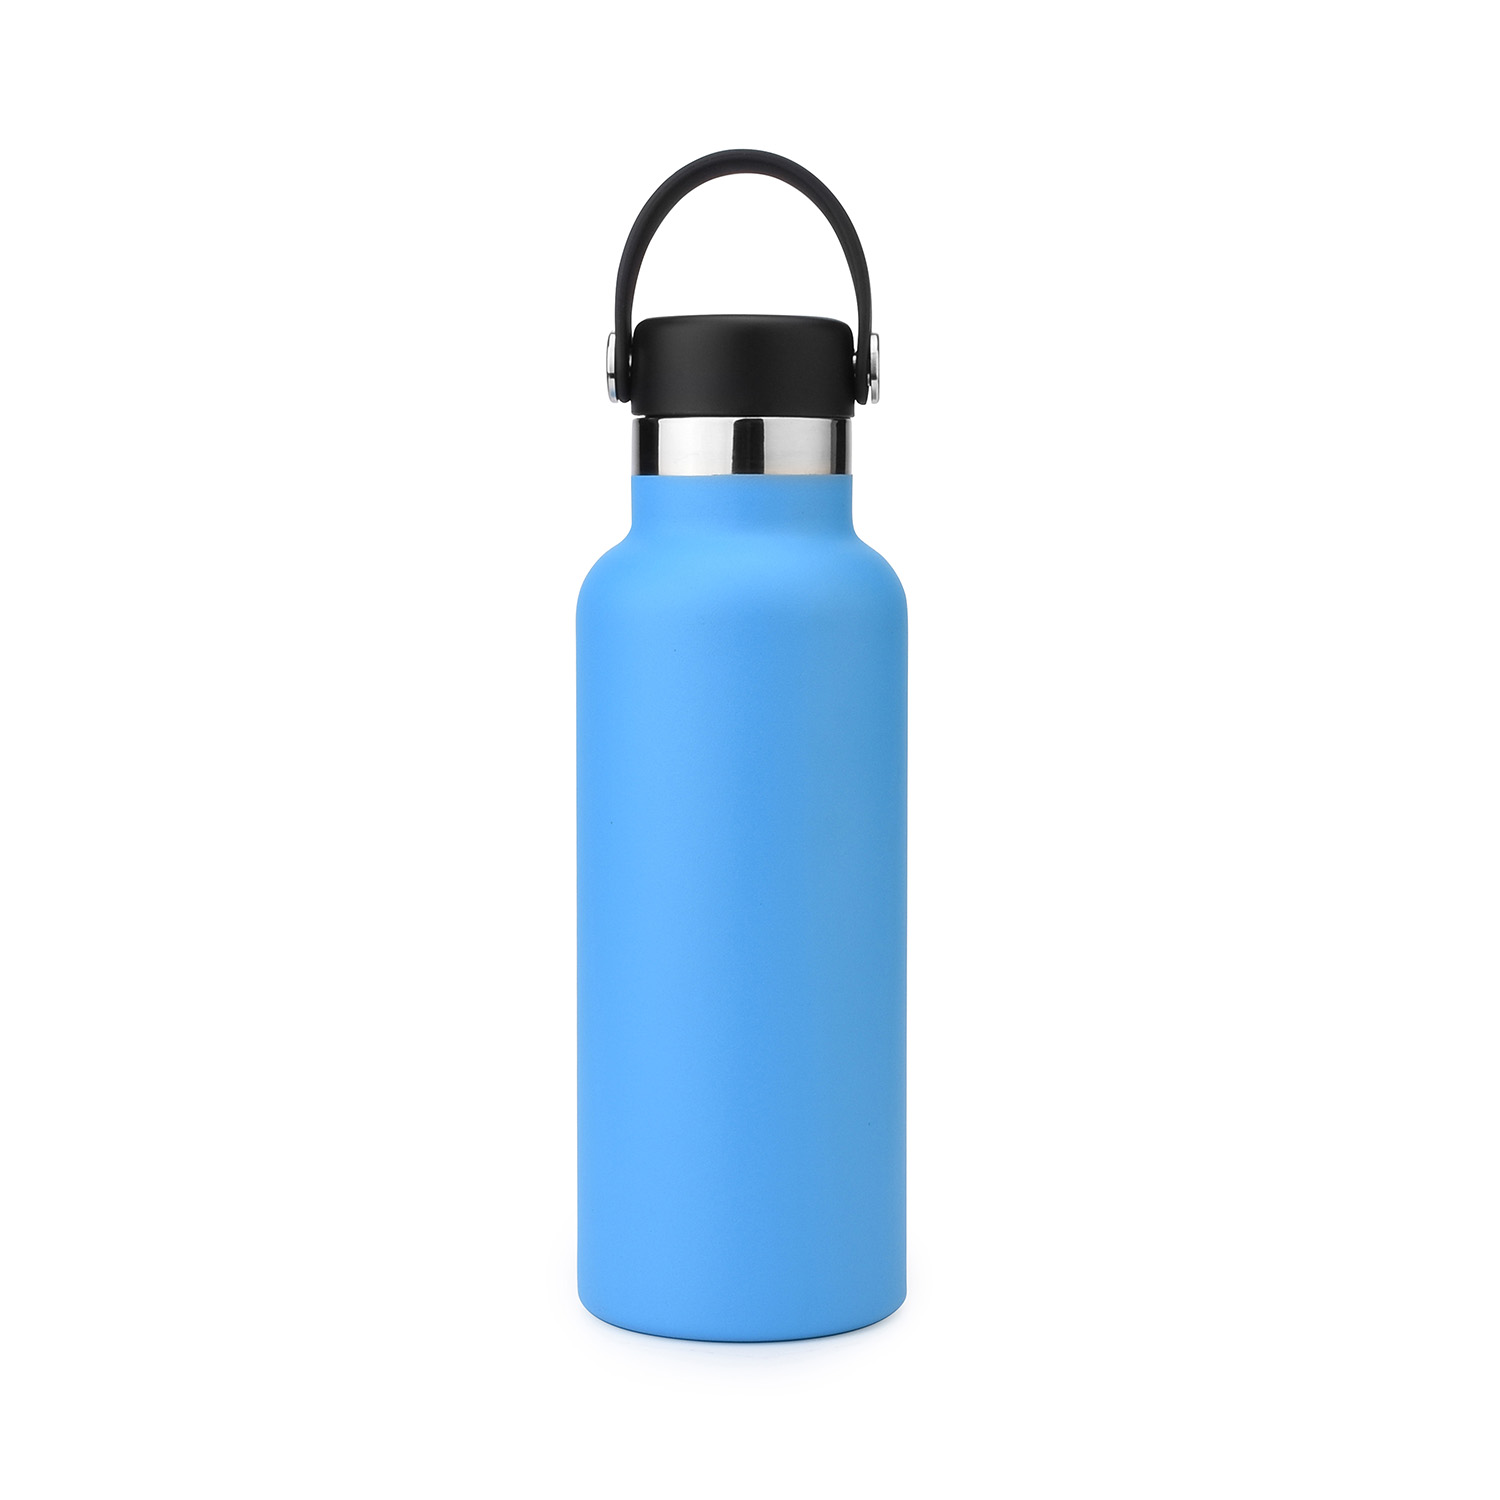 https://www.waterbottle.tech/wp-content/uploads/2019/09/Hydro-Flask-standard-mouth-water-bottle-s112095-0.jpg